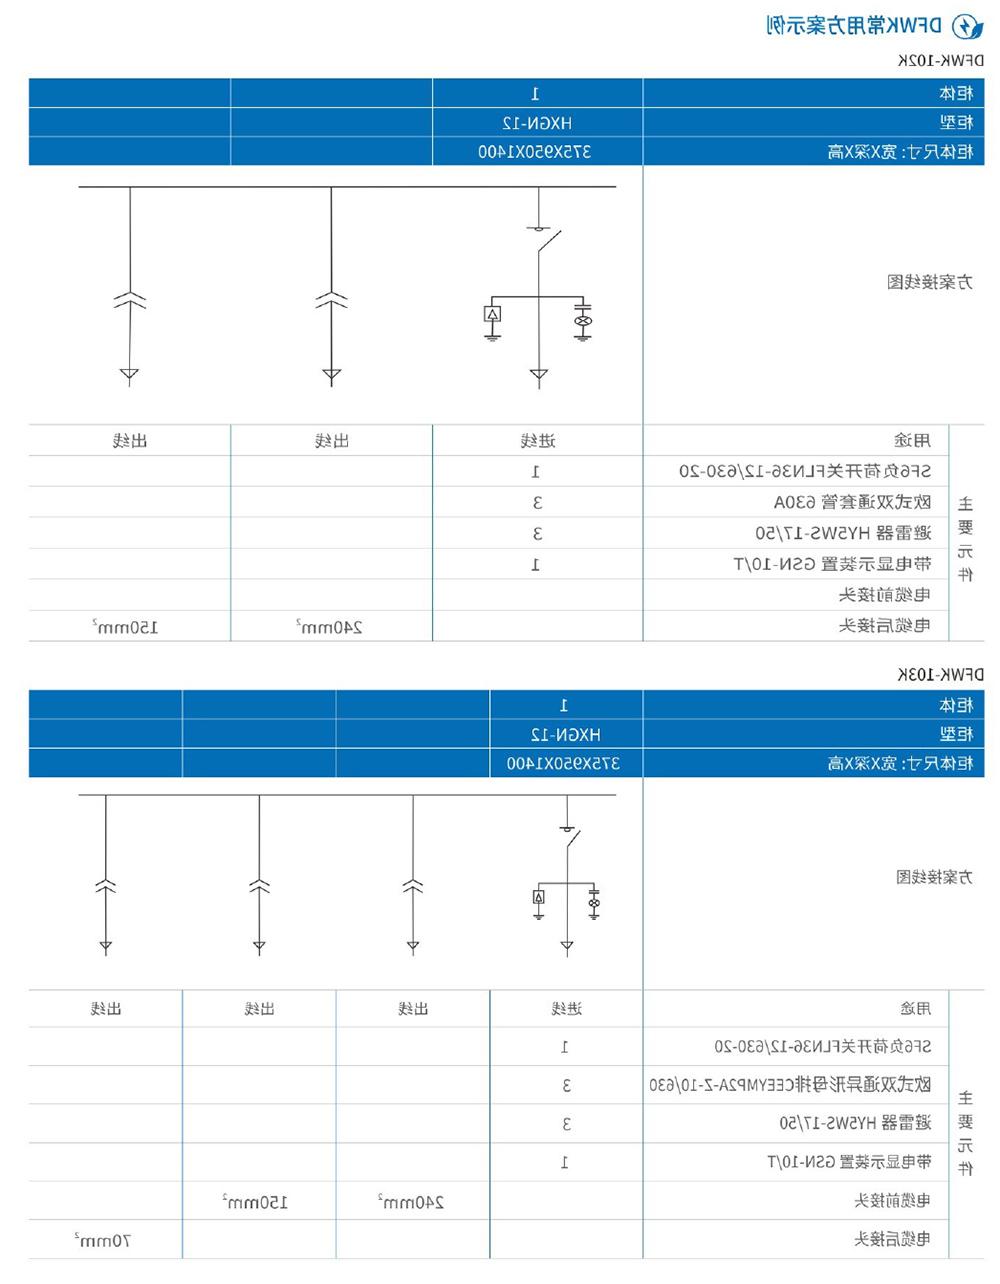 天翔电气产品选型手册-26.jpg